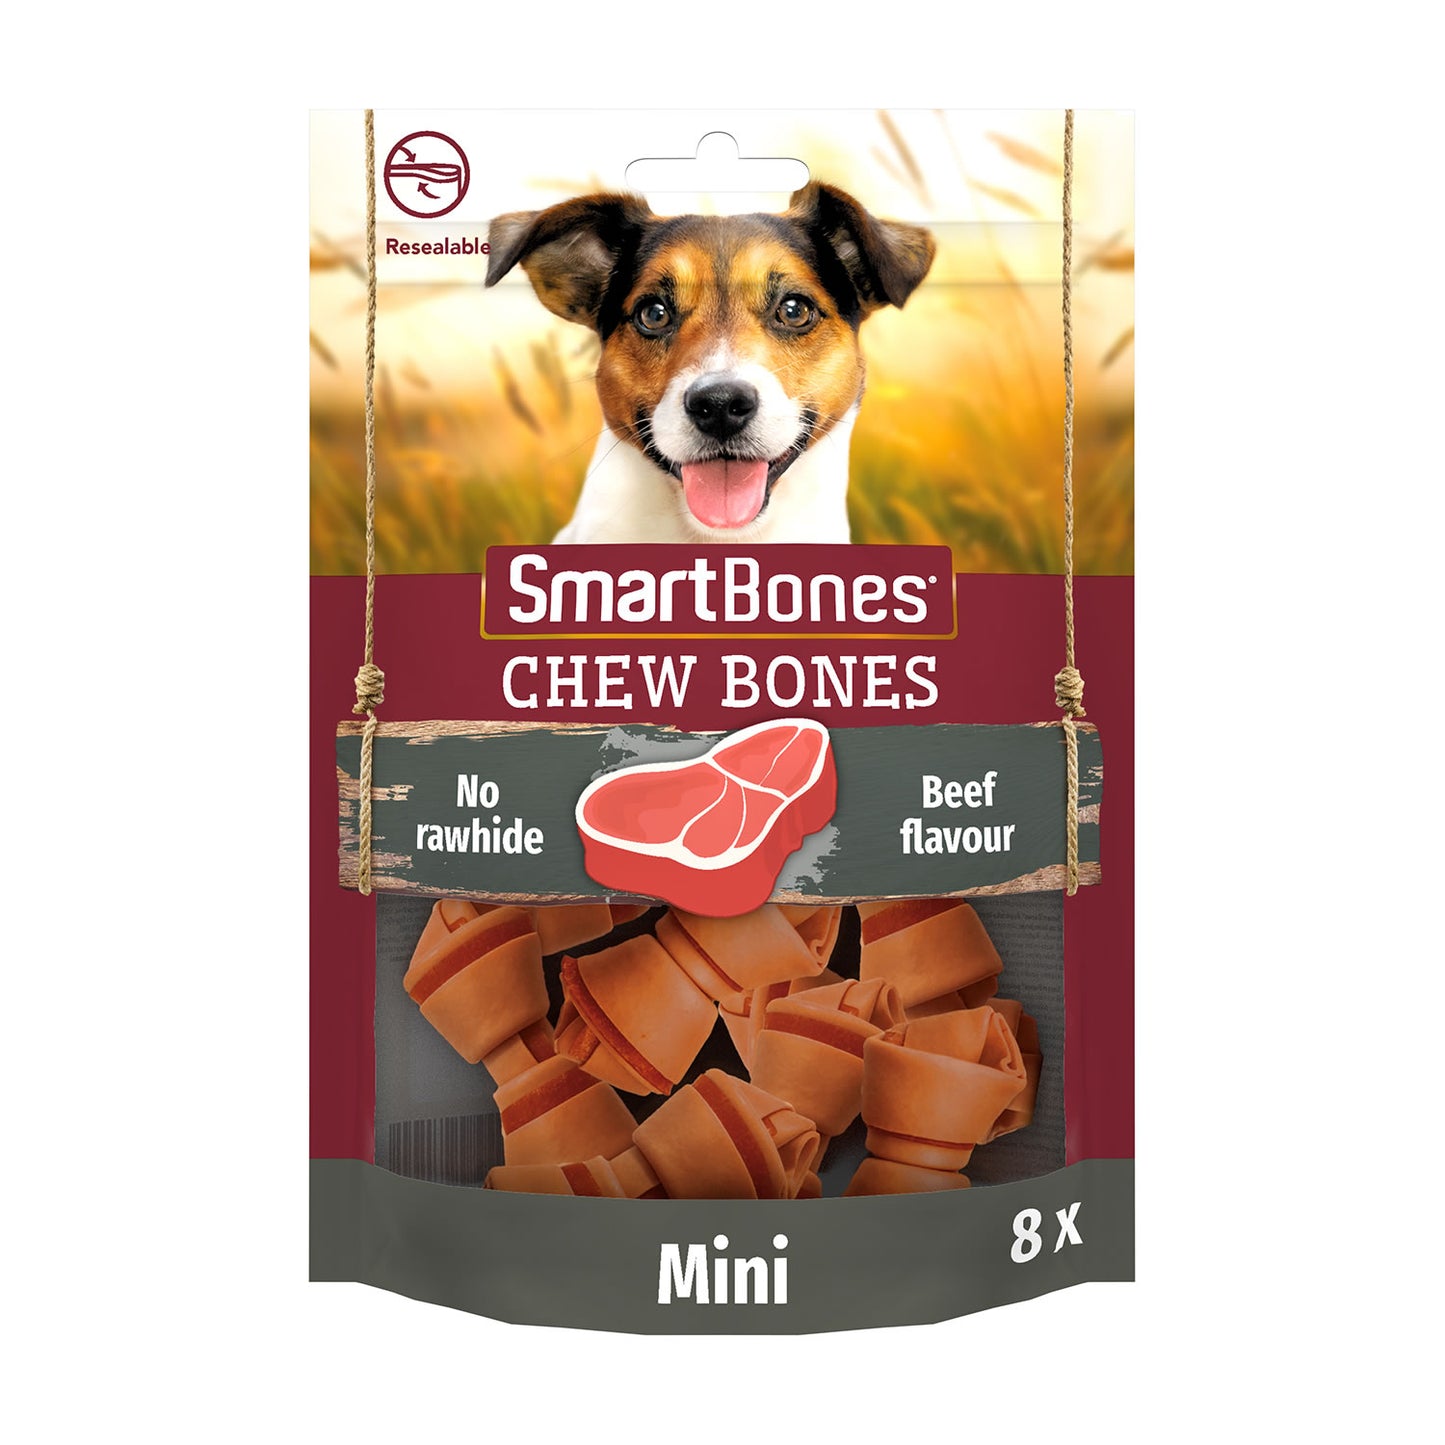 SmartBones Beef Chew Bones Mini - 8 Bones